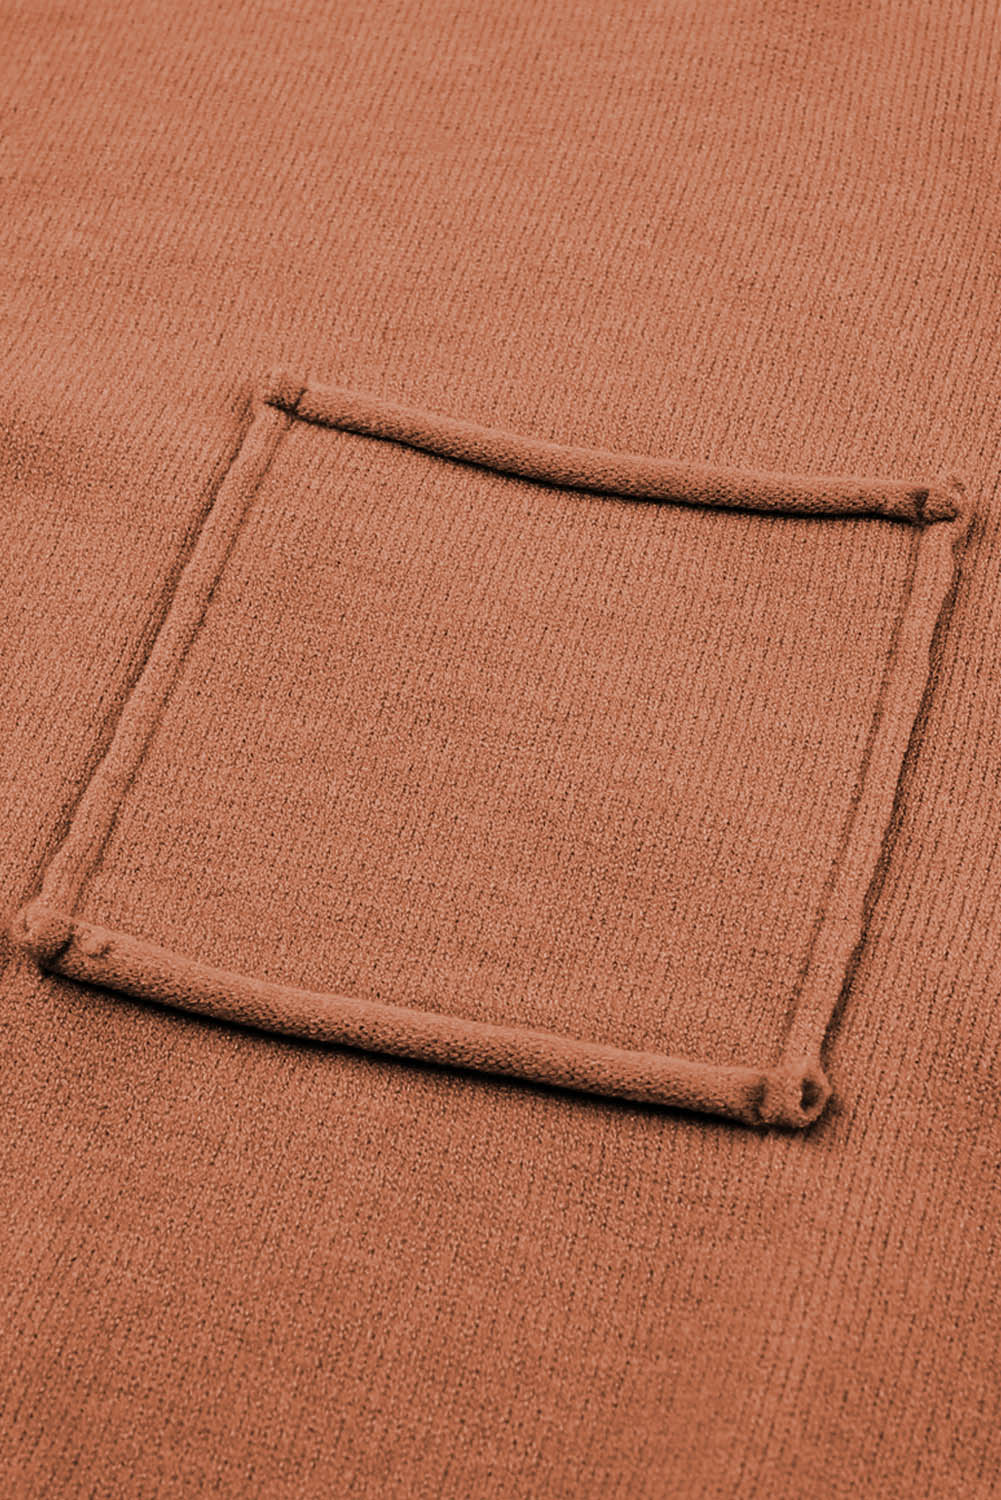 Maglione ampio arancione con tasca applicata e cucitura a vista